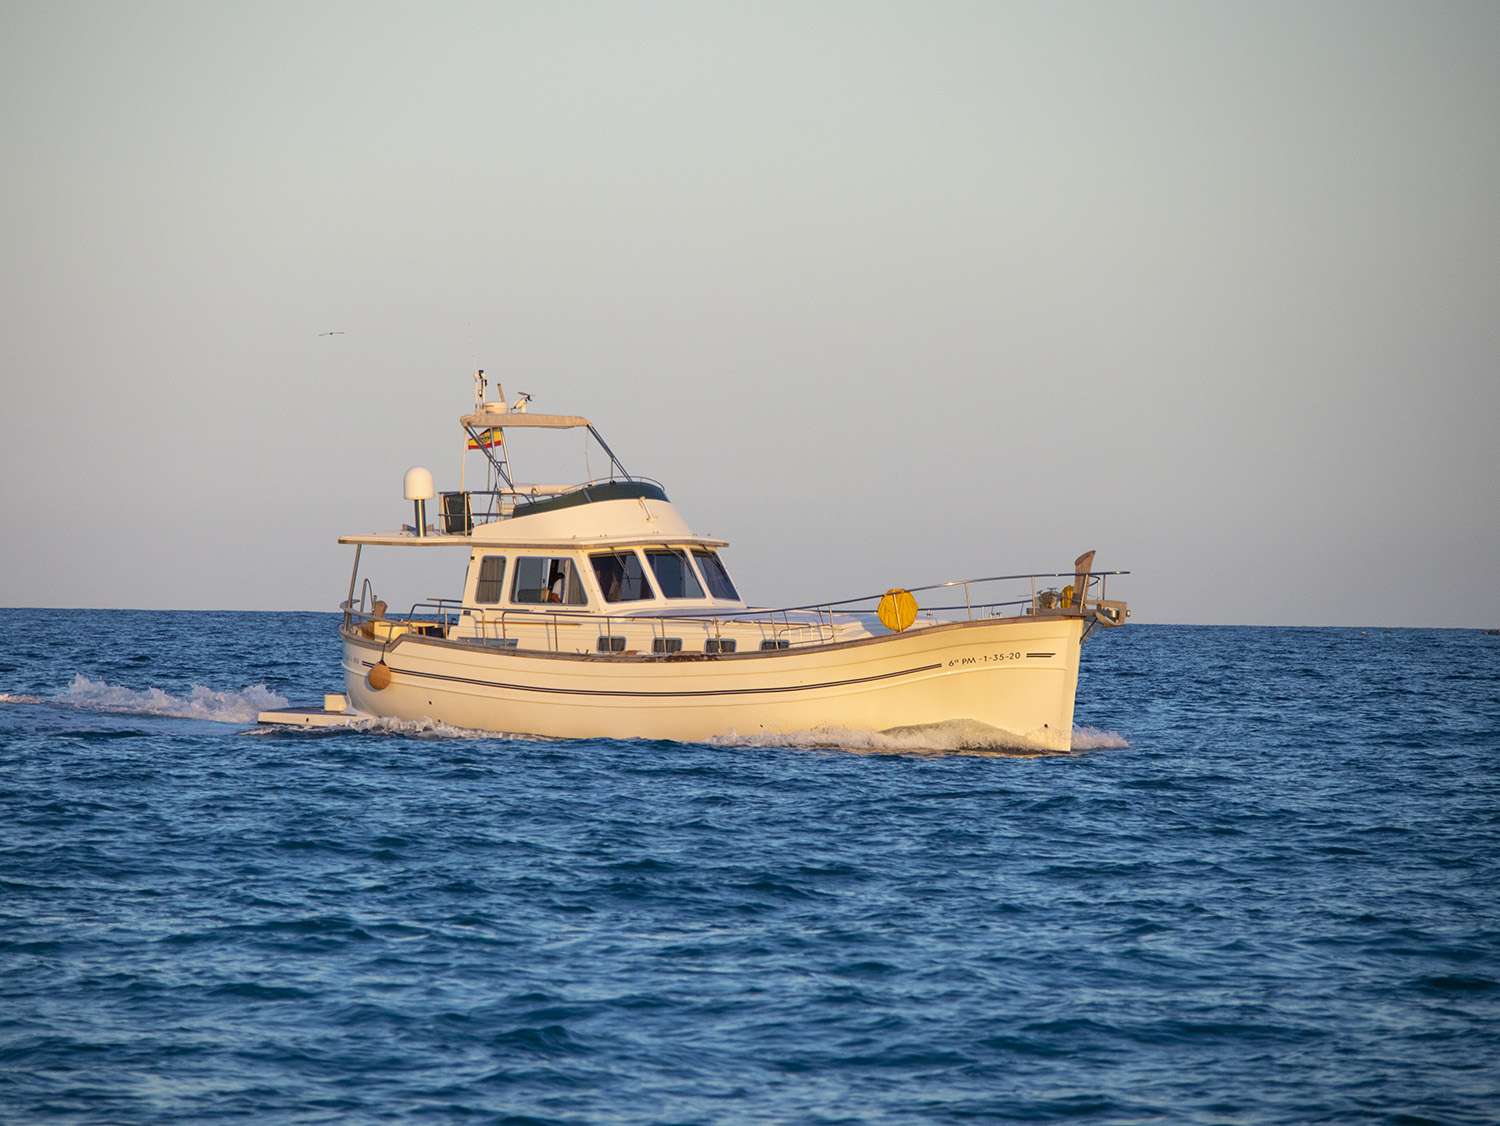 Menorquin 180 - Motor Boat Charter Balearics & Boat hire in Spain Balearic Islands Menorca Maó-Mahón Puerto Mahon 1